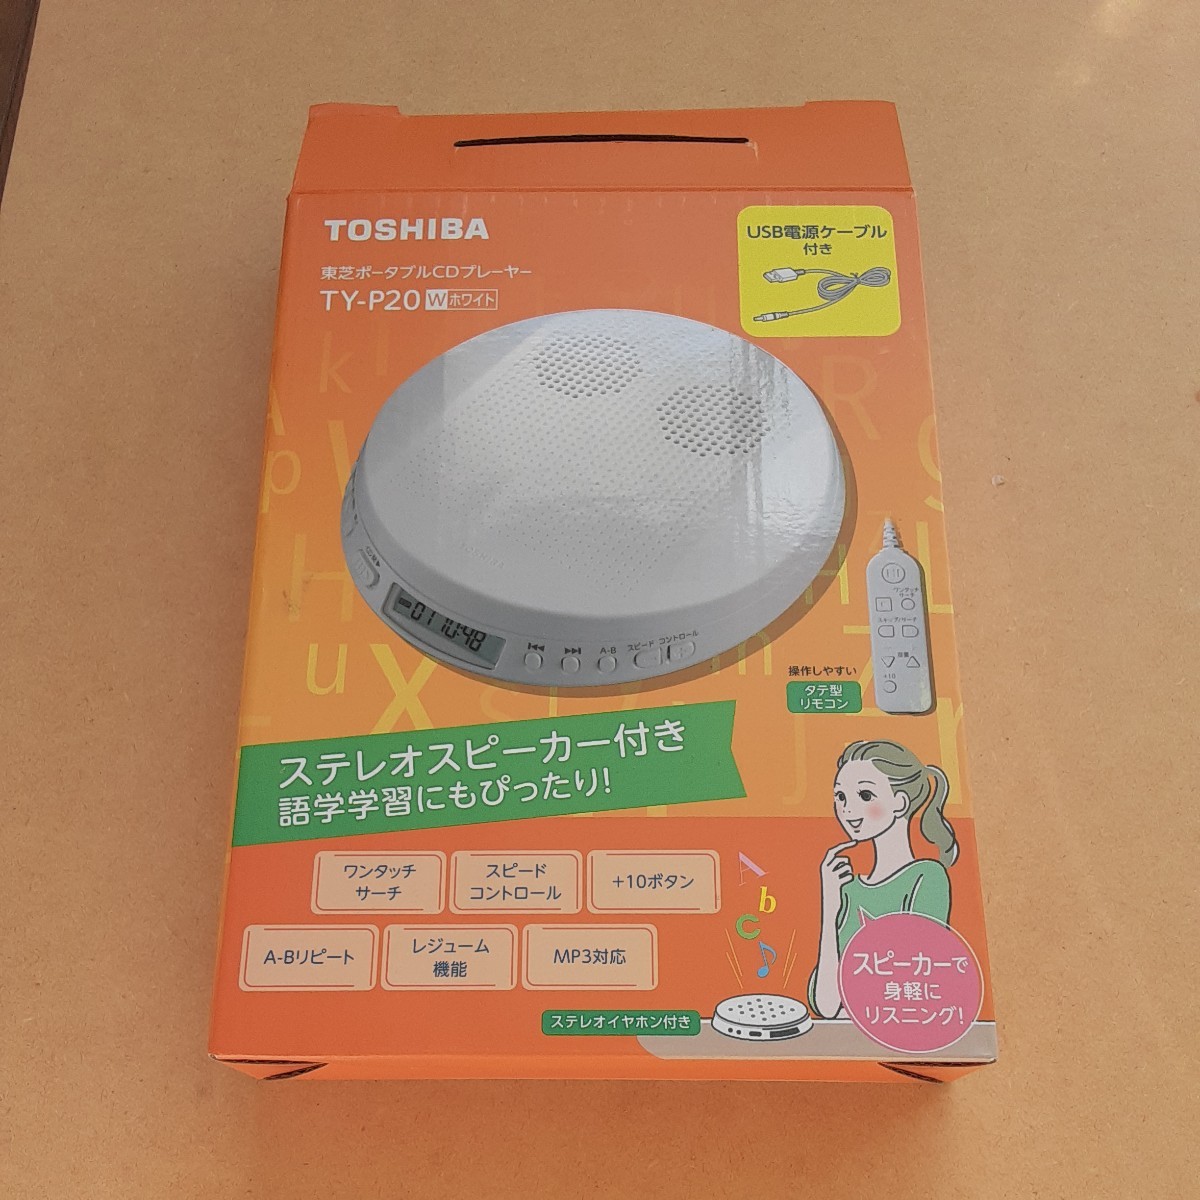  Toshiba портативный TY-P20 утиль корпус только TOSHIBA TY-P20-W ( белый ) CD плеер стерео динамик установка инструкция кейс 